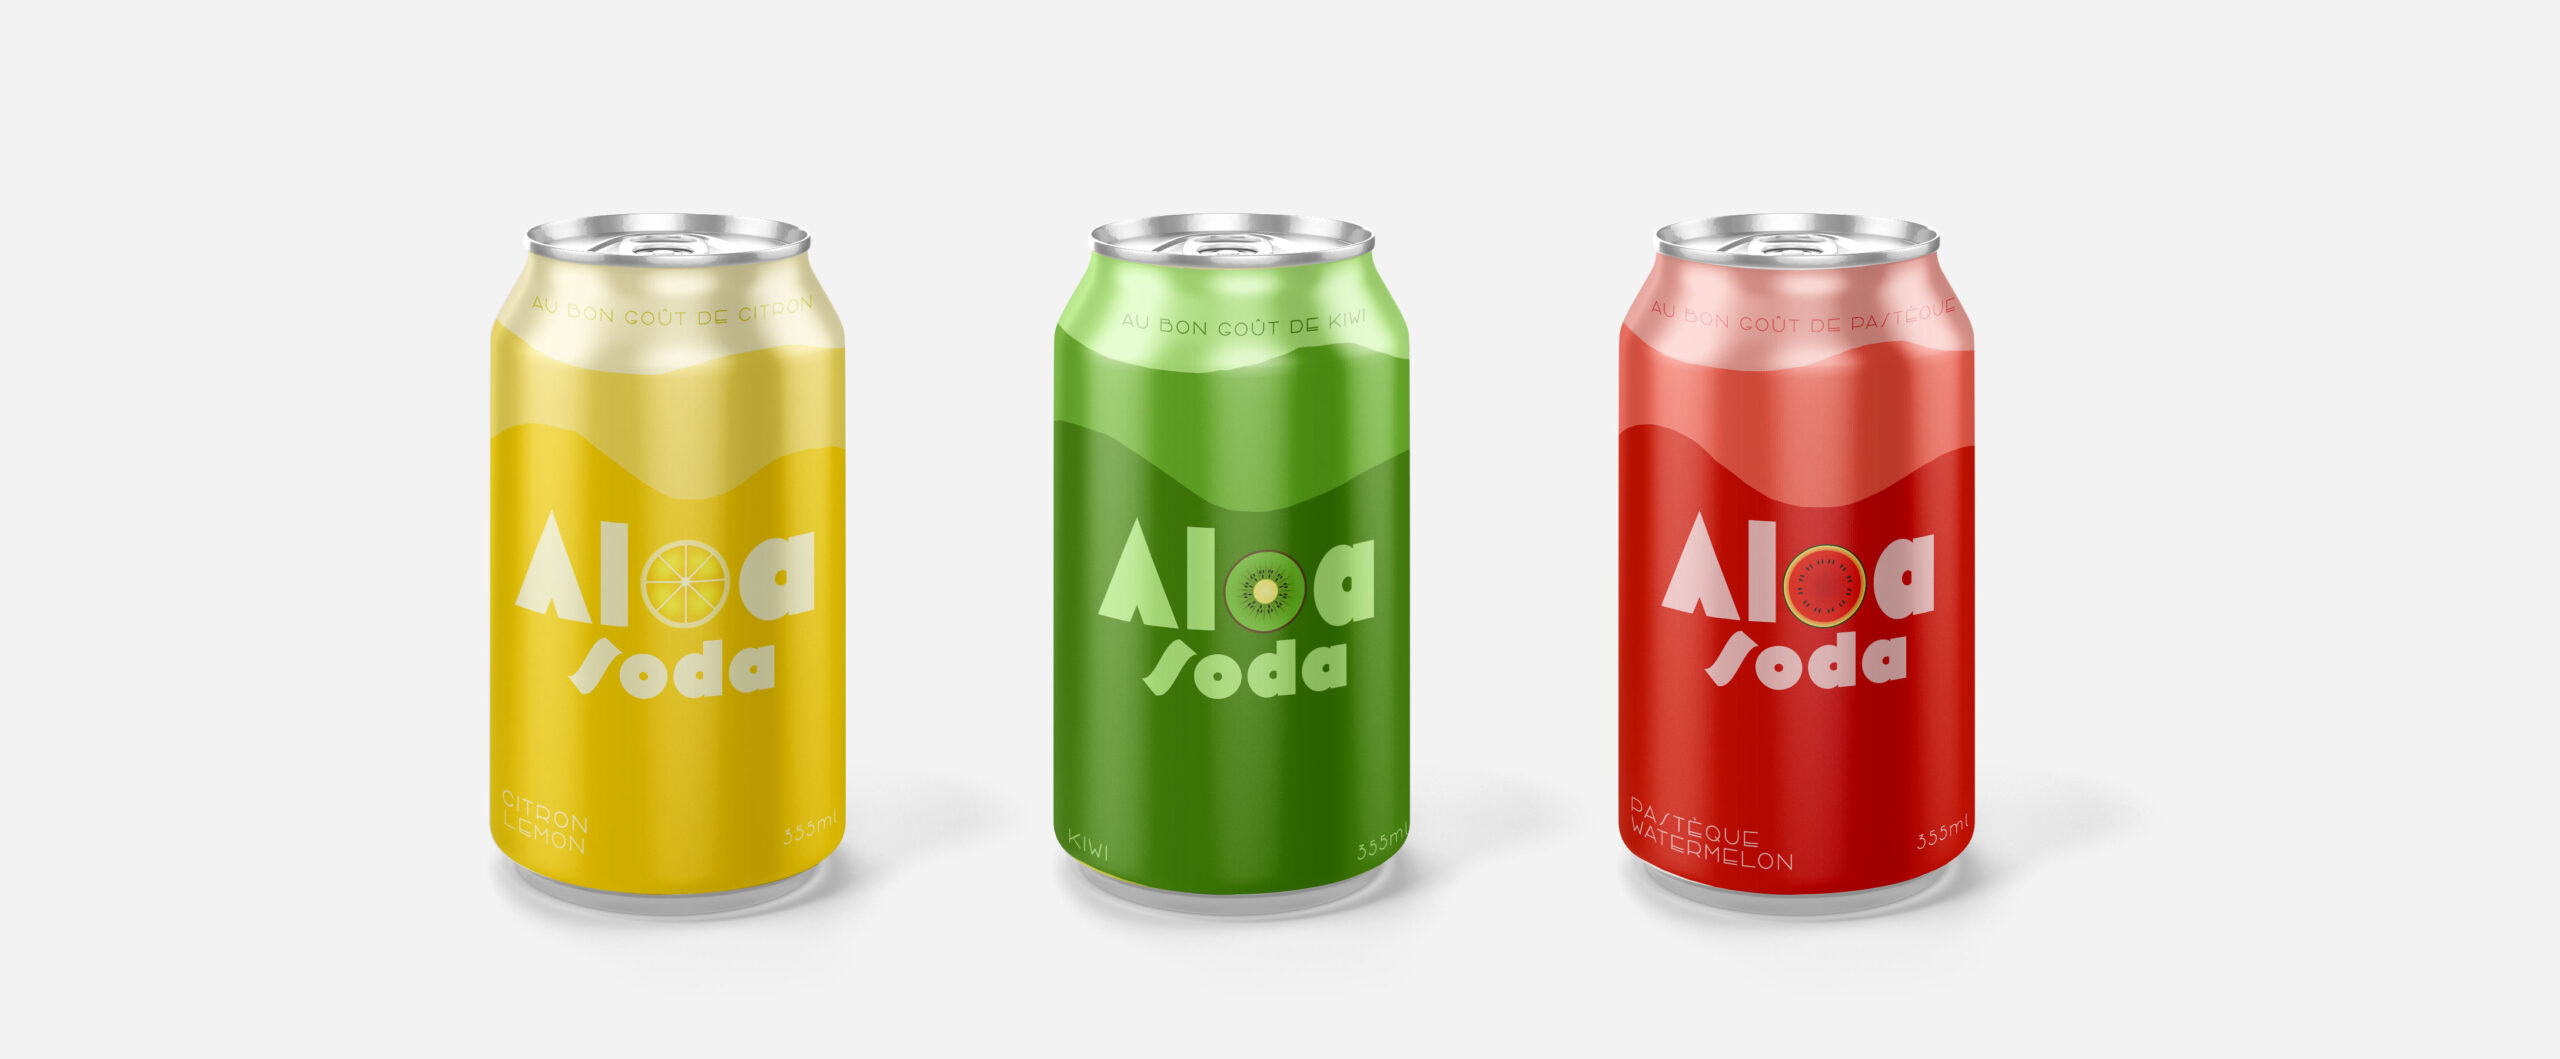 Aloa Soda